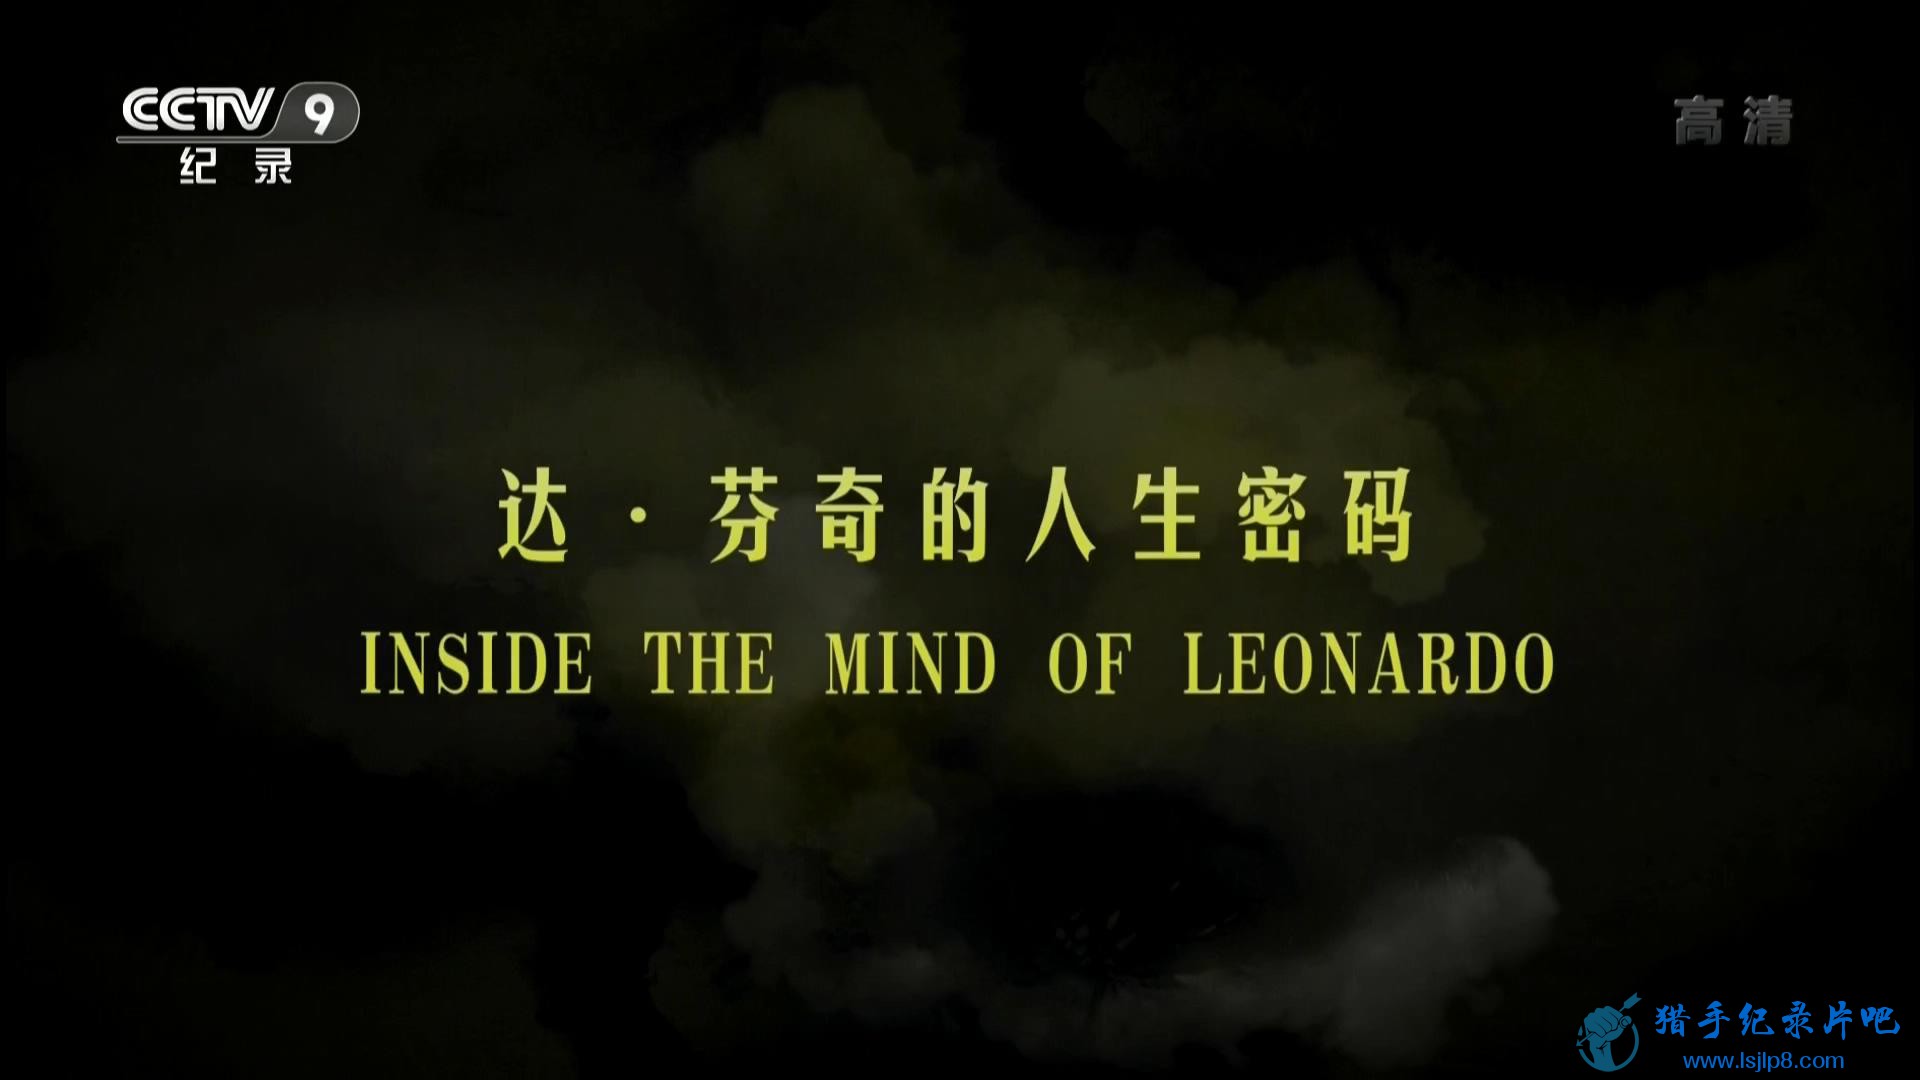 Inside the Mind of Leonardo ϼ_20180316122141.JPG